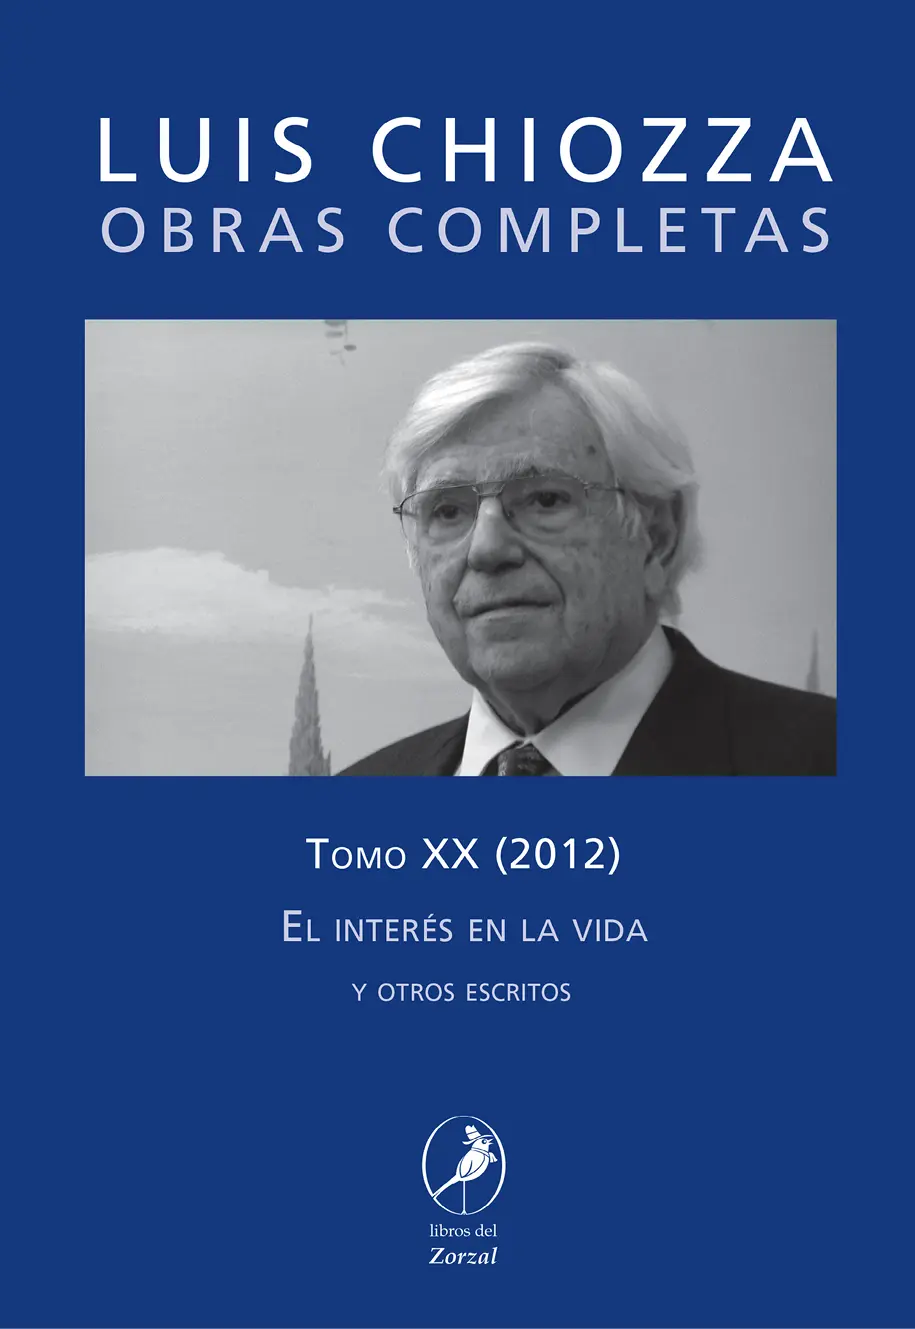 Luis Chiozza OBRAS COMPLETAS Tomo XX El interés en la vida y otros escritos - фото 1